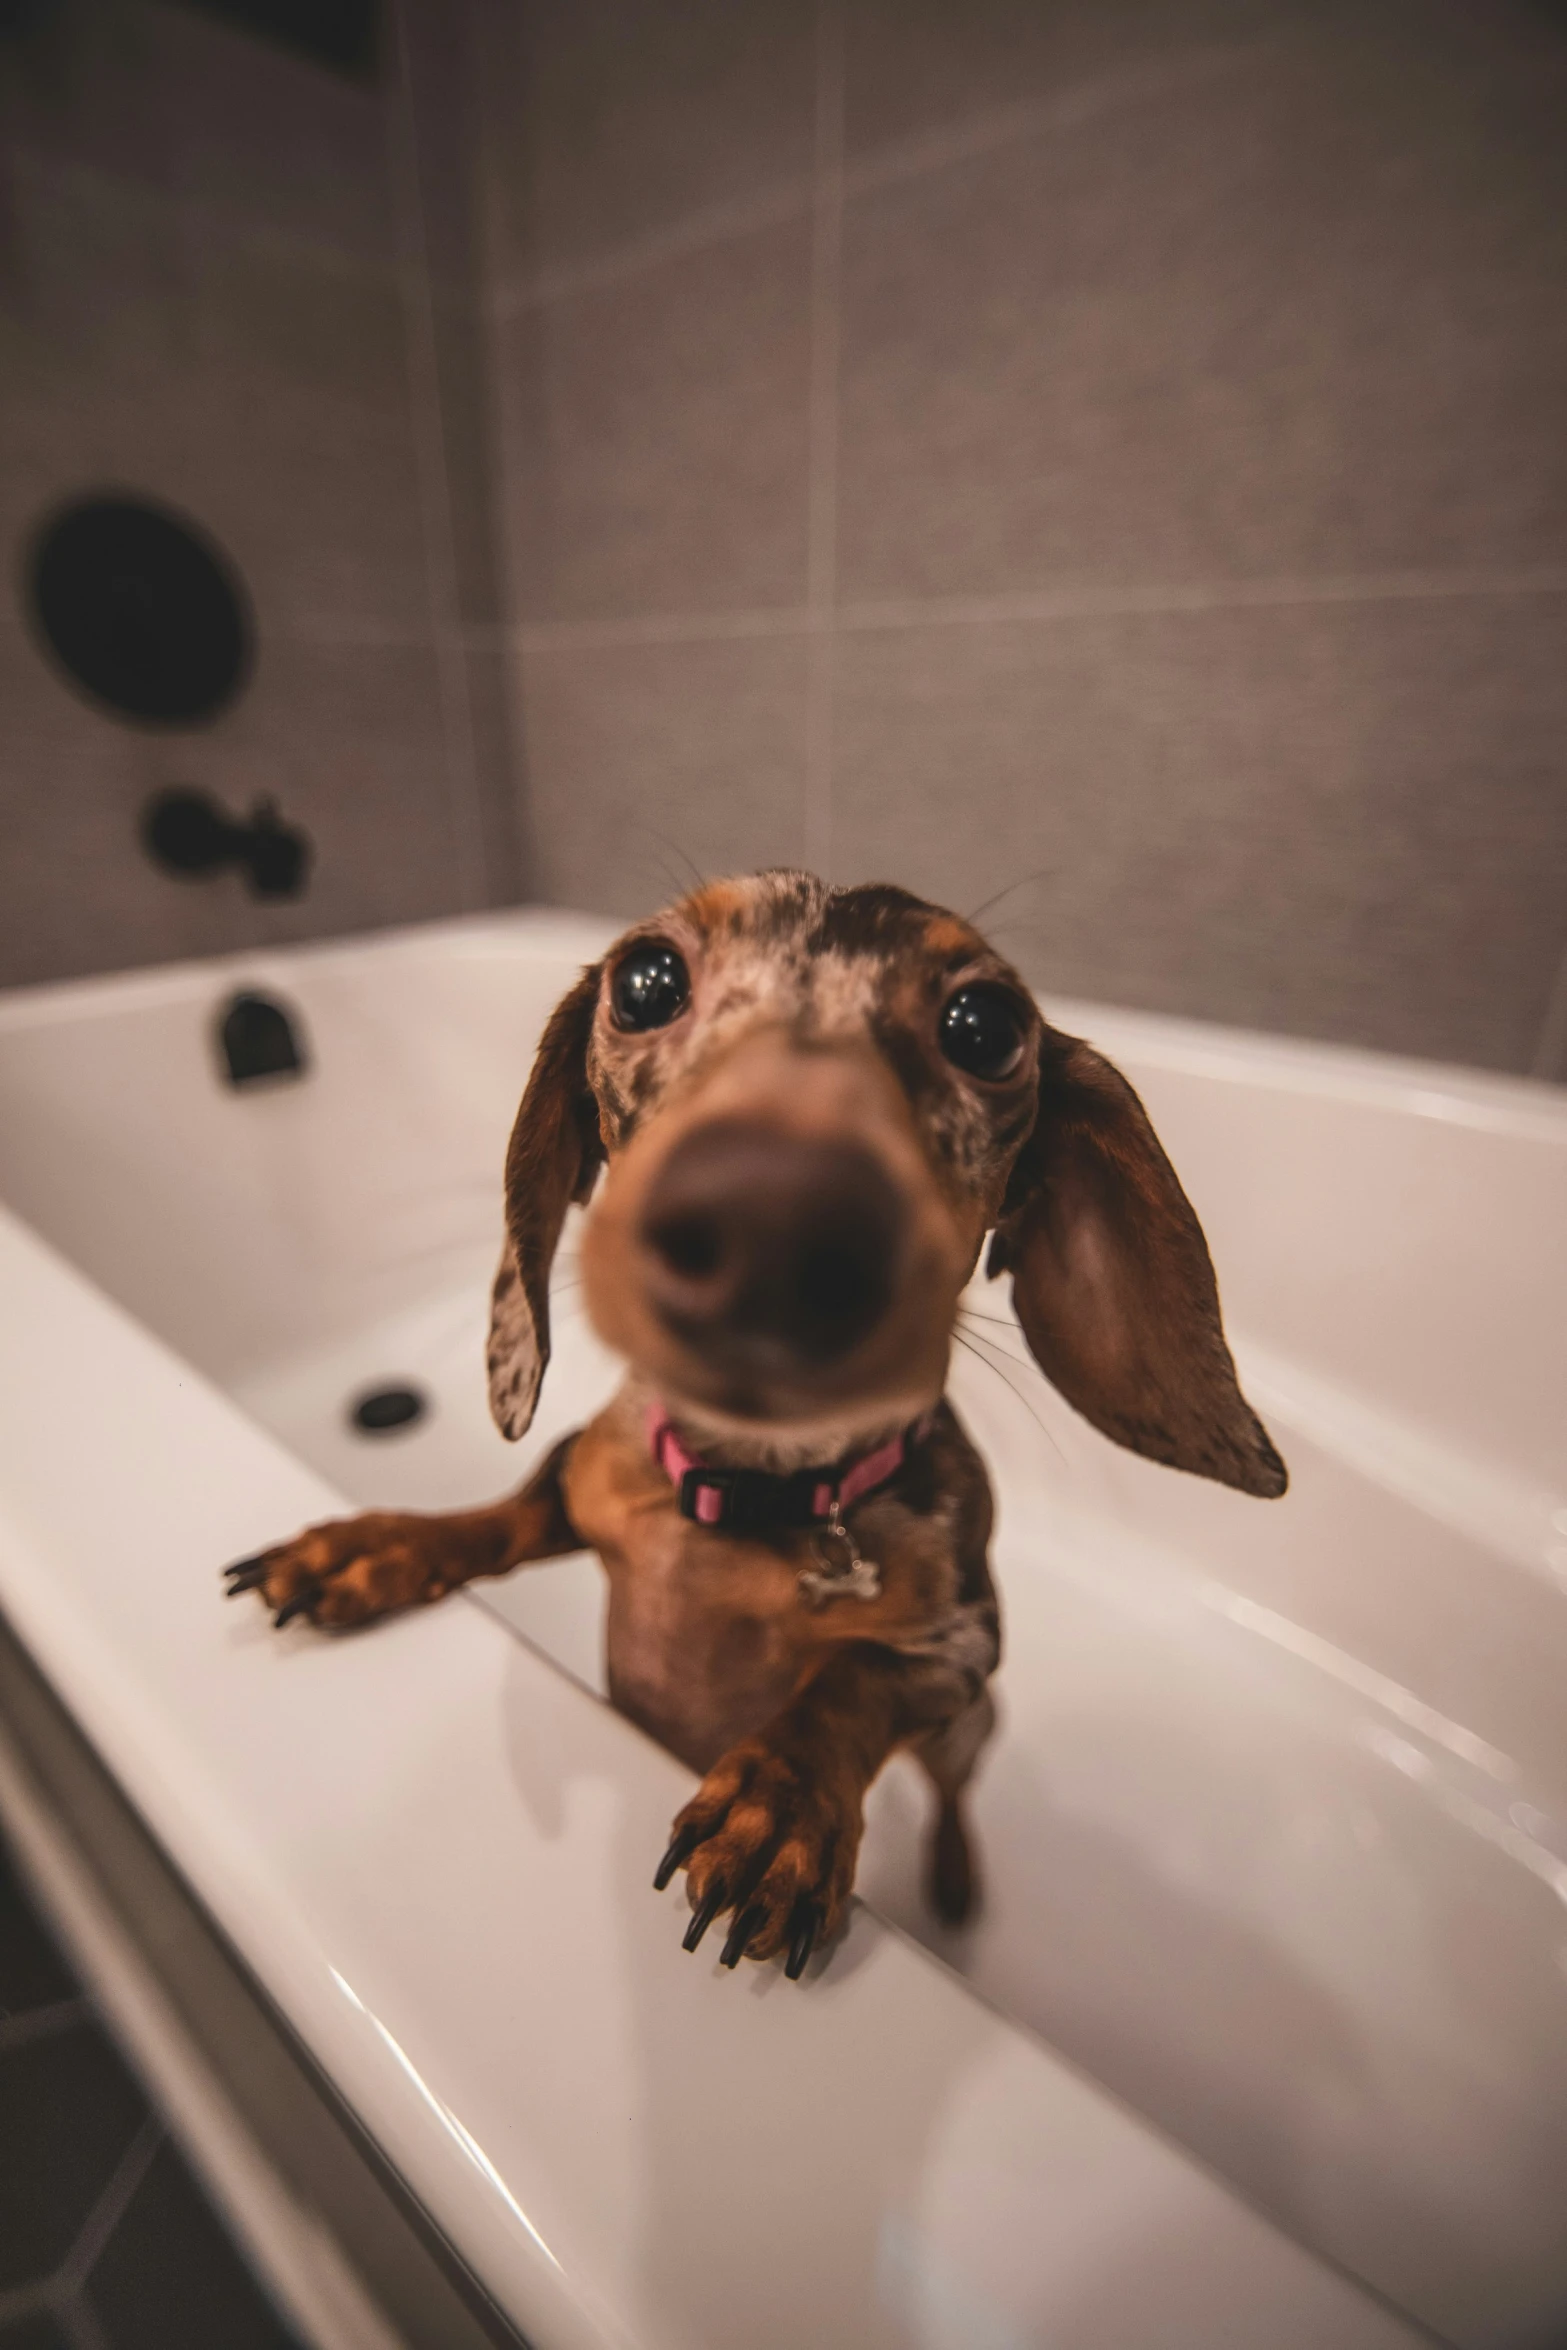 a dog that is sitting in a bath tub